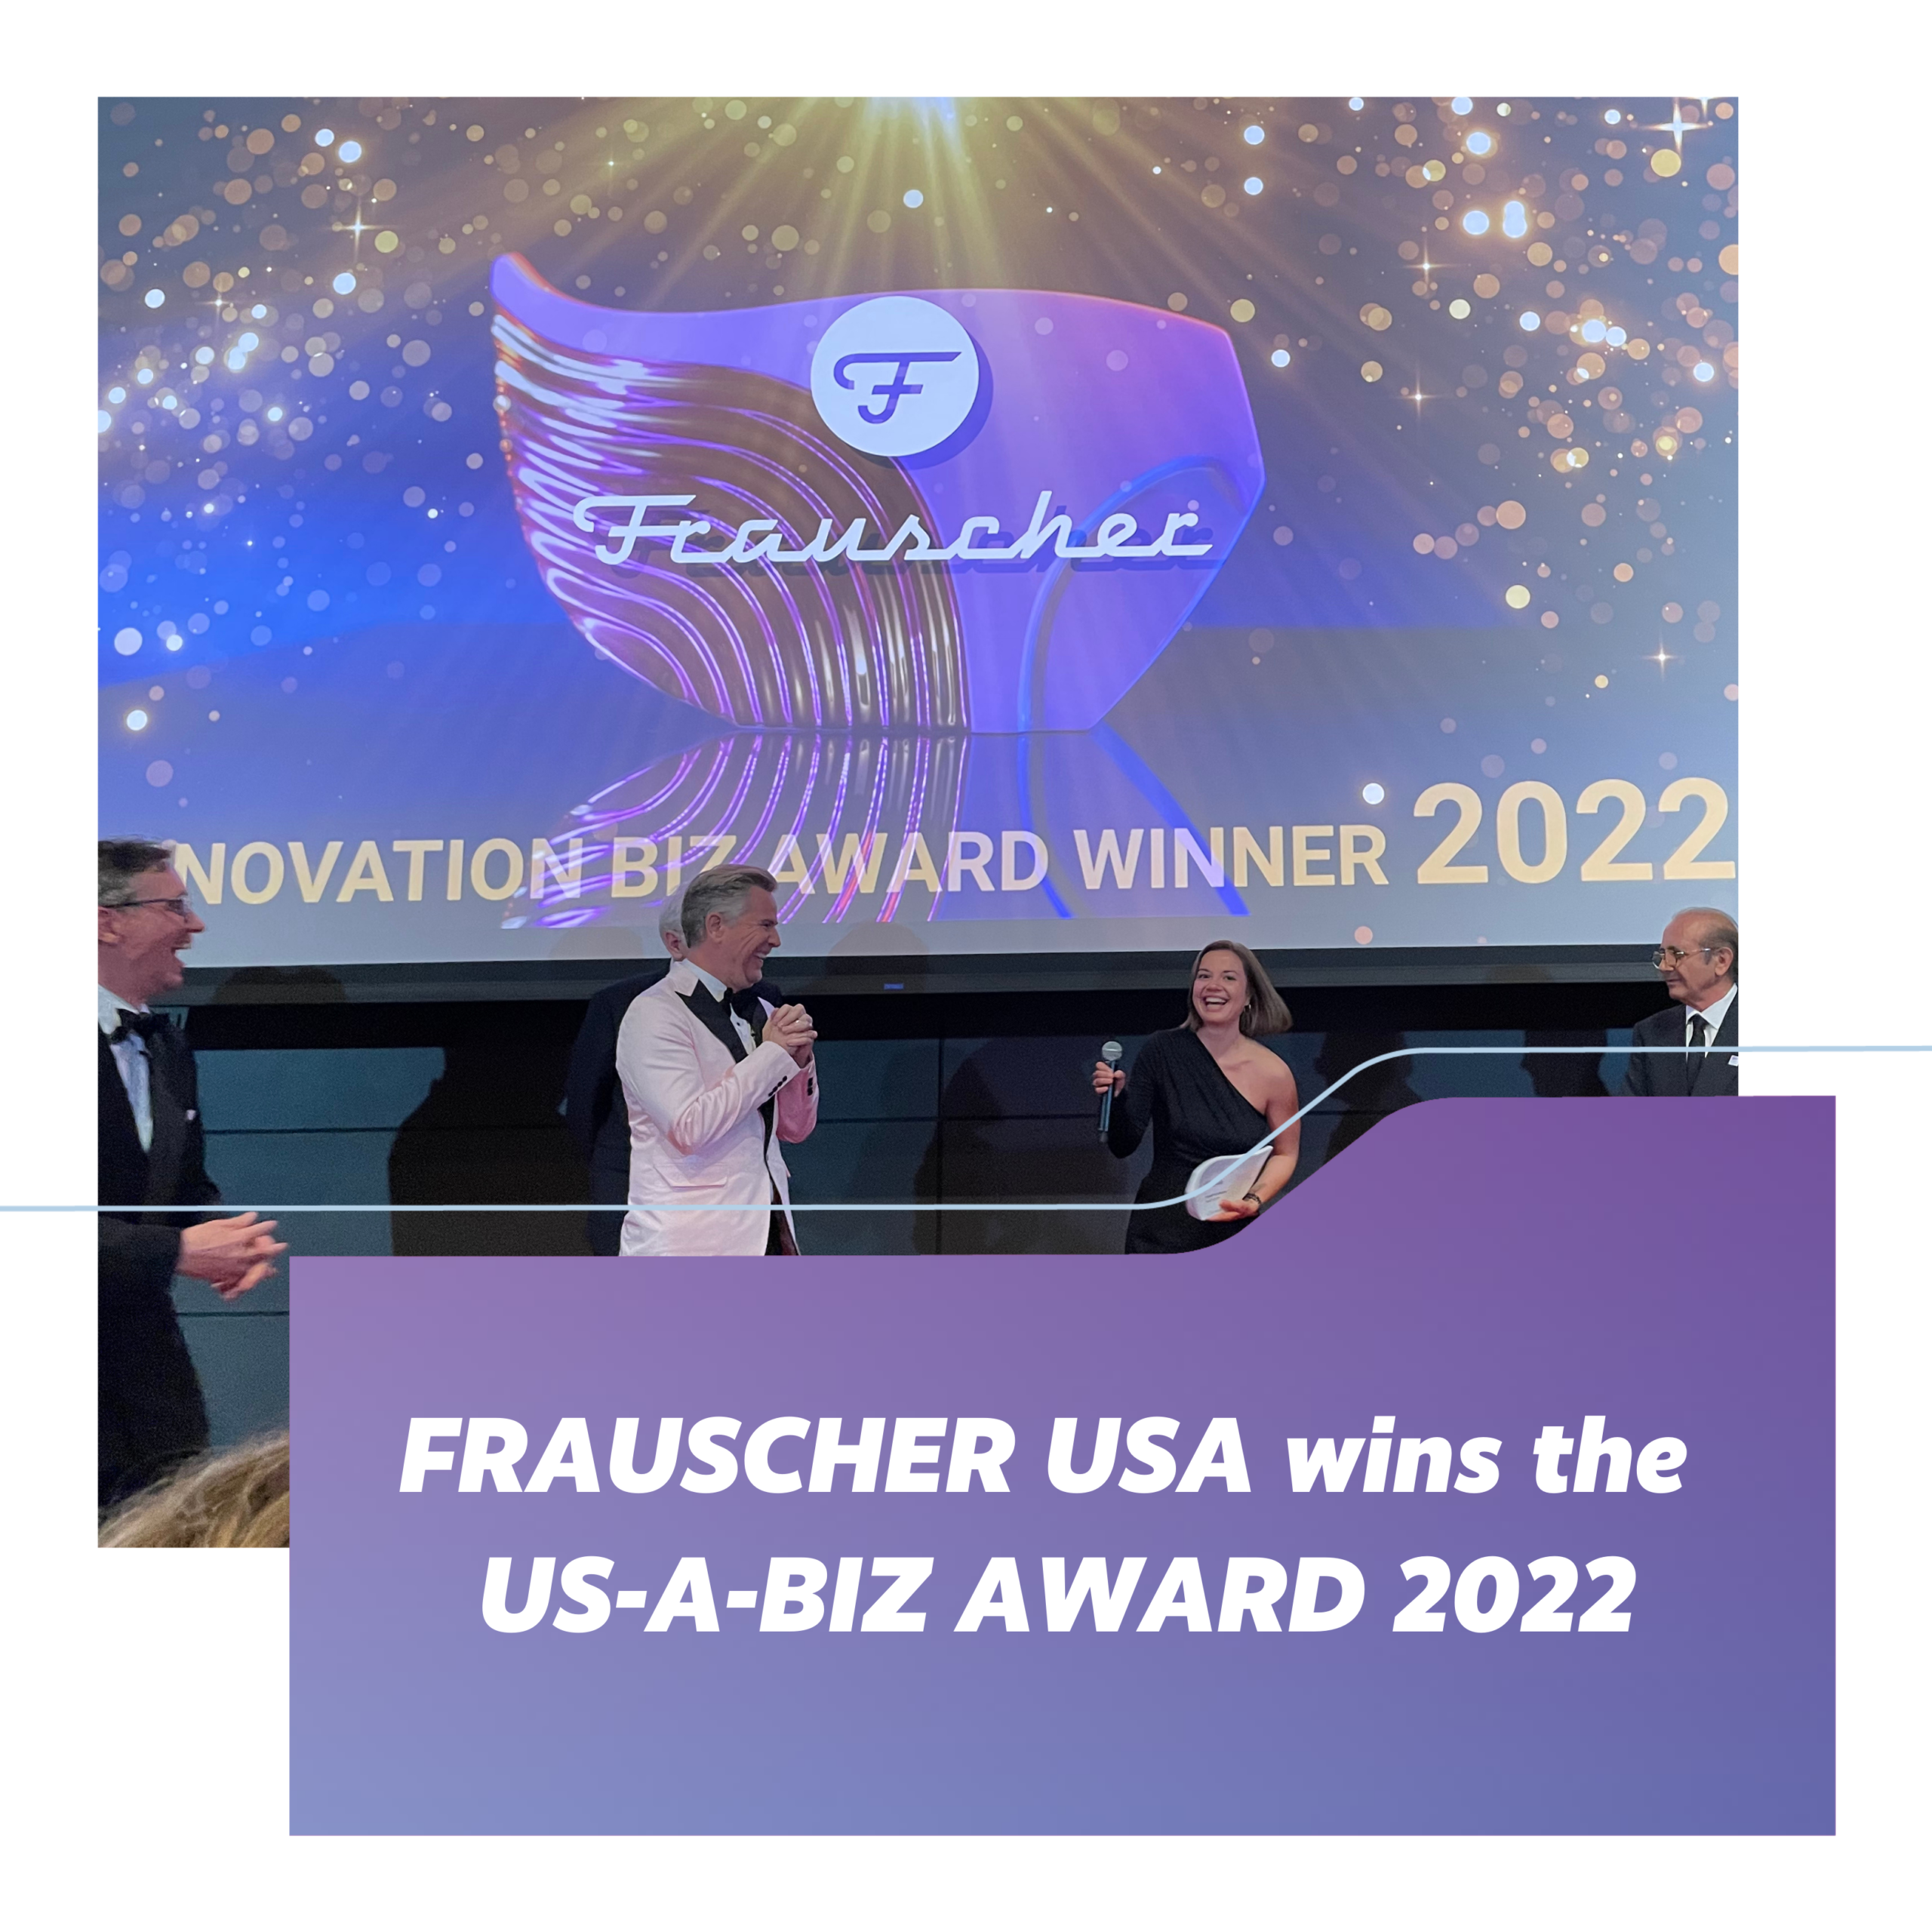 FRAUSCHER USA wins the US-A-BIZ Award!